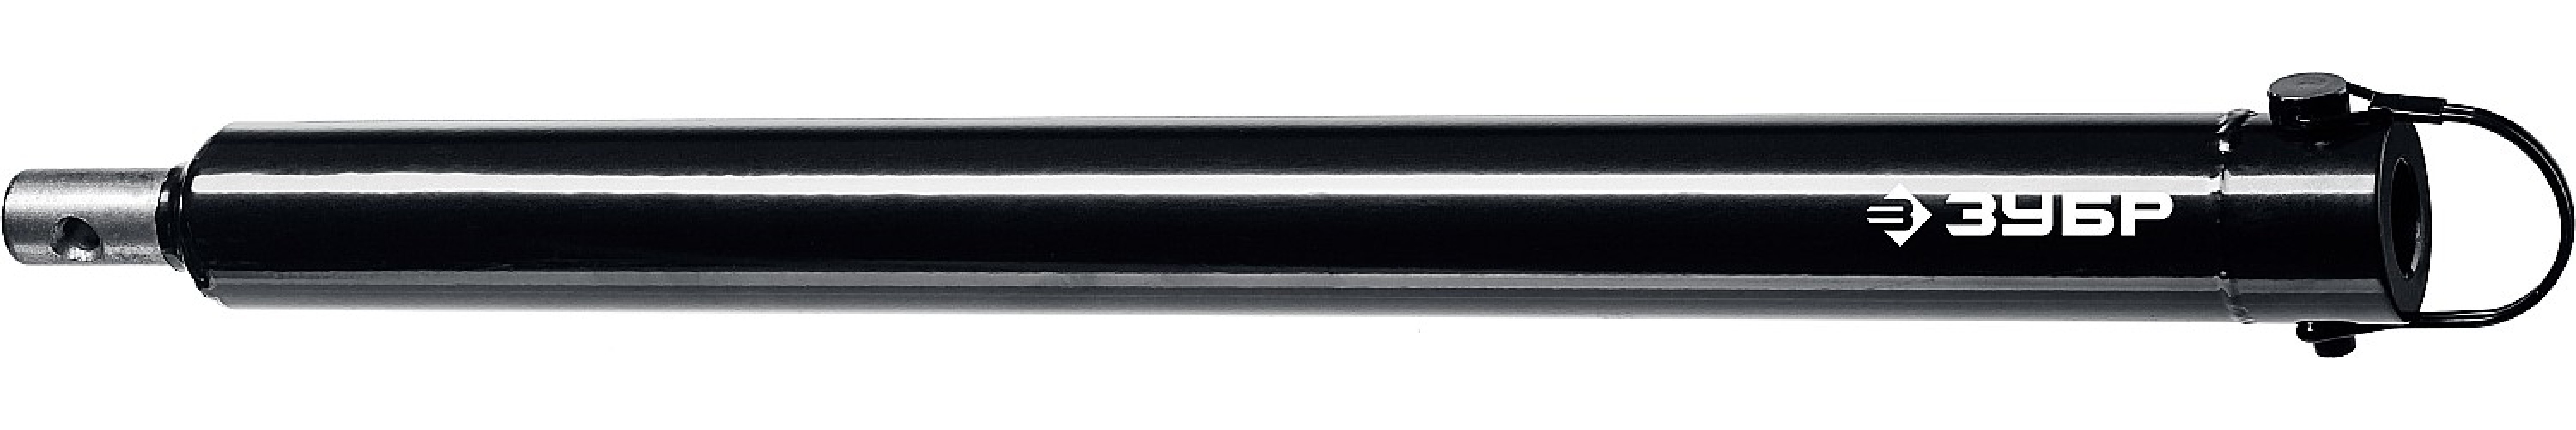 ЗУБР 500 мм, удлинитель шнека для мотобуров () (7050-50)